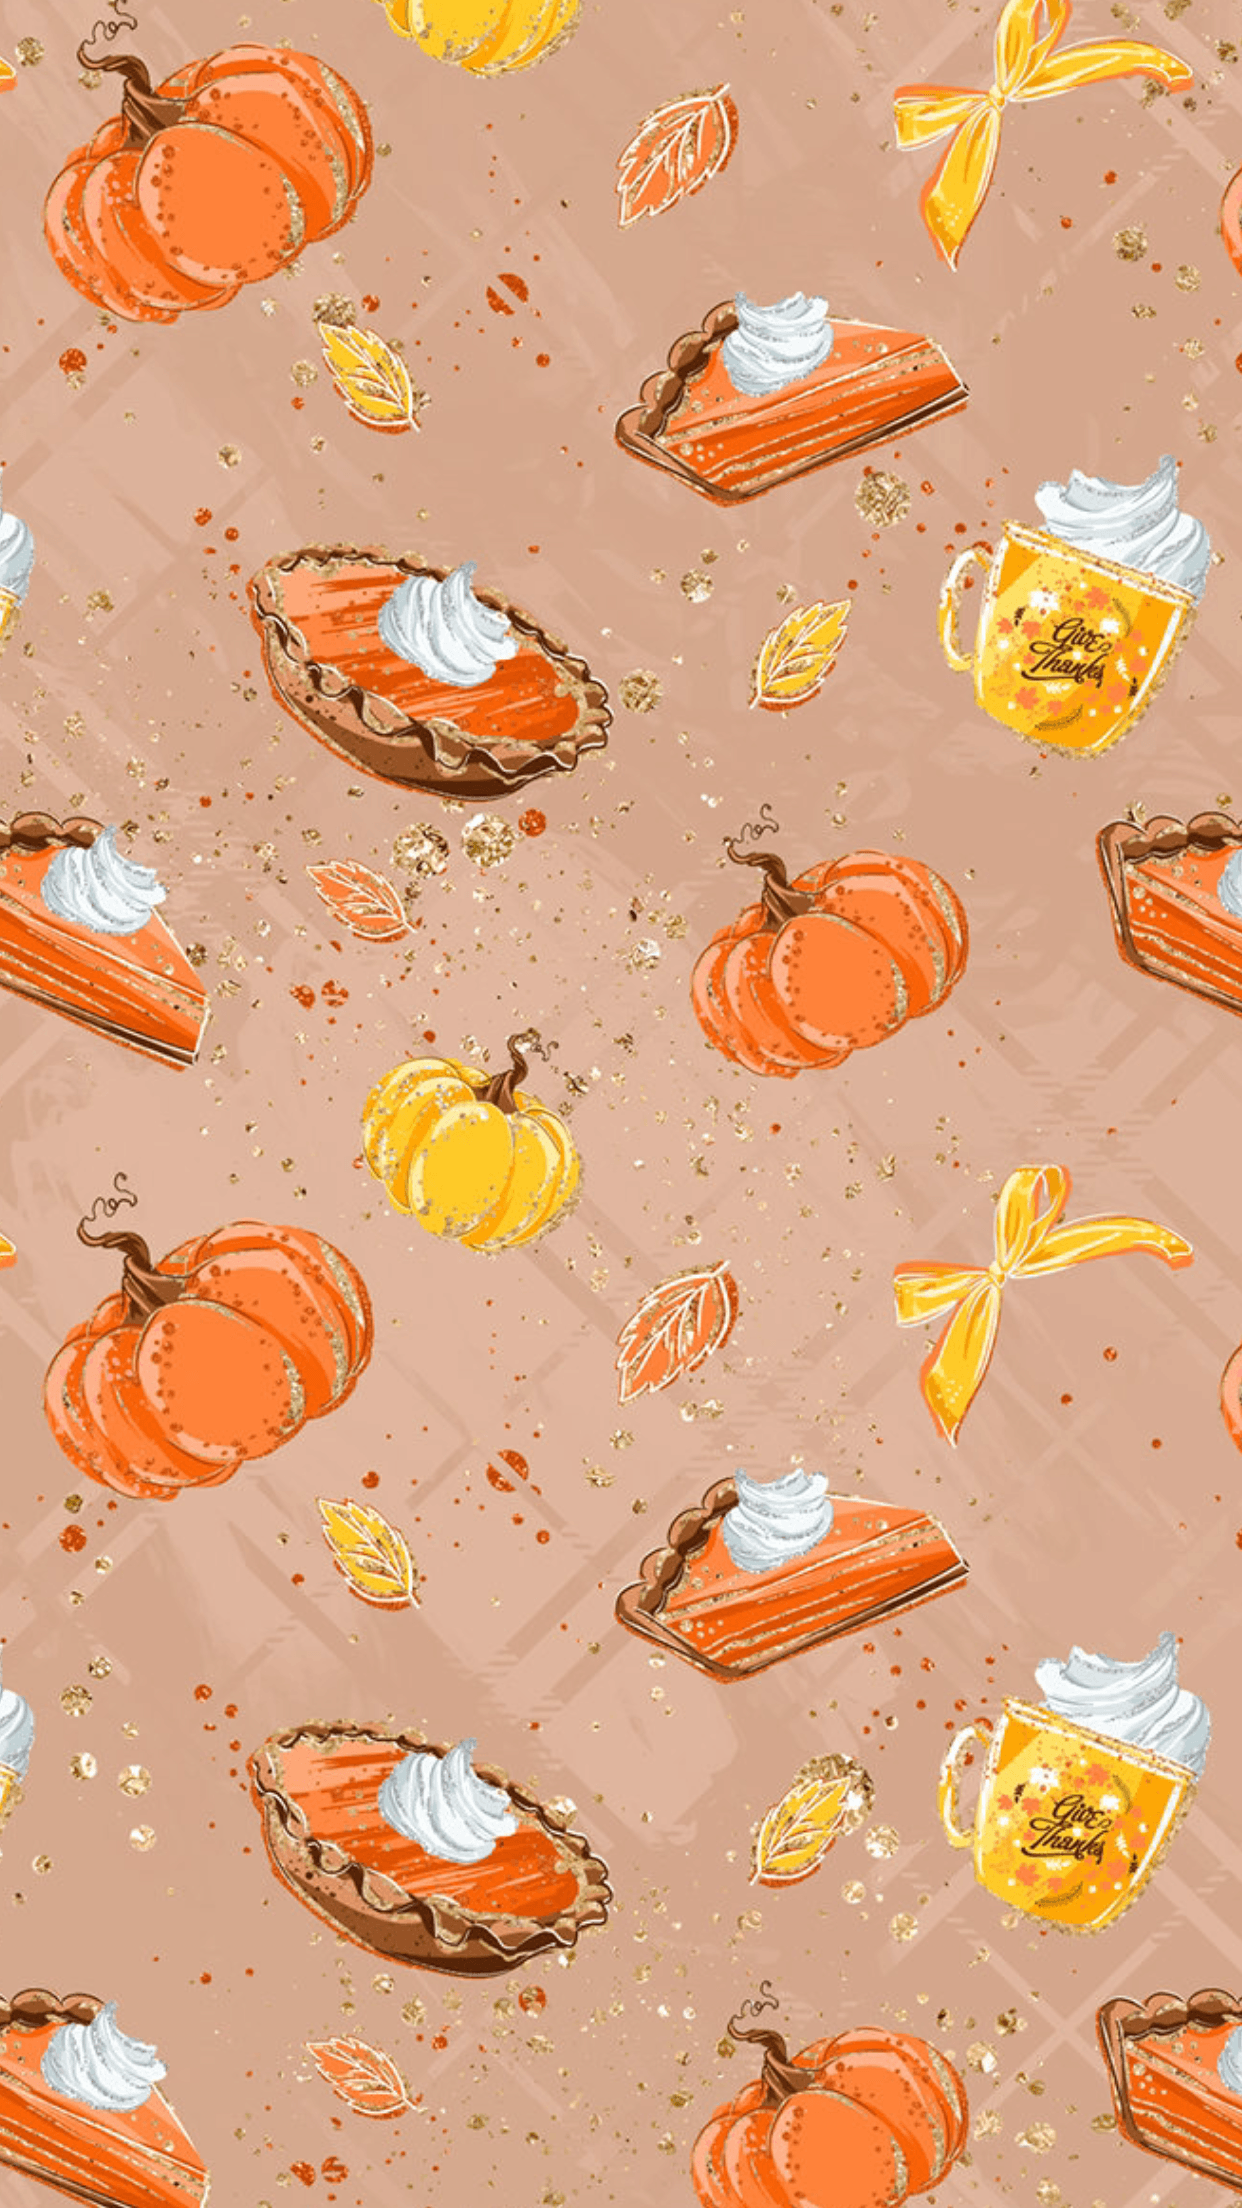 Pumpkin Pie. Fall wallpaper, Thanksgiving wallpaper, Aztec wallpaper